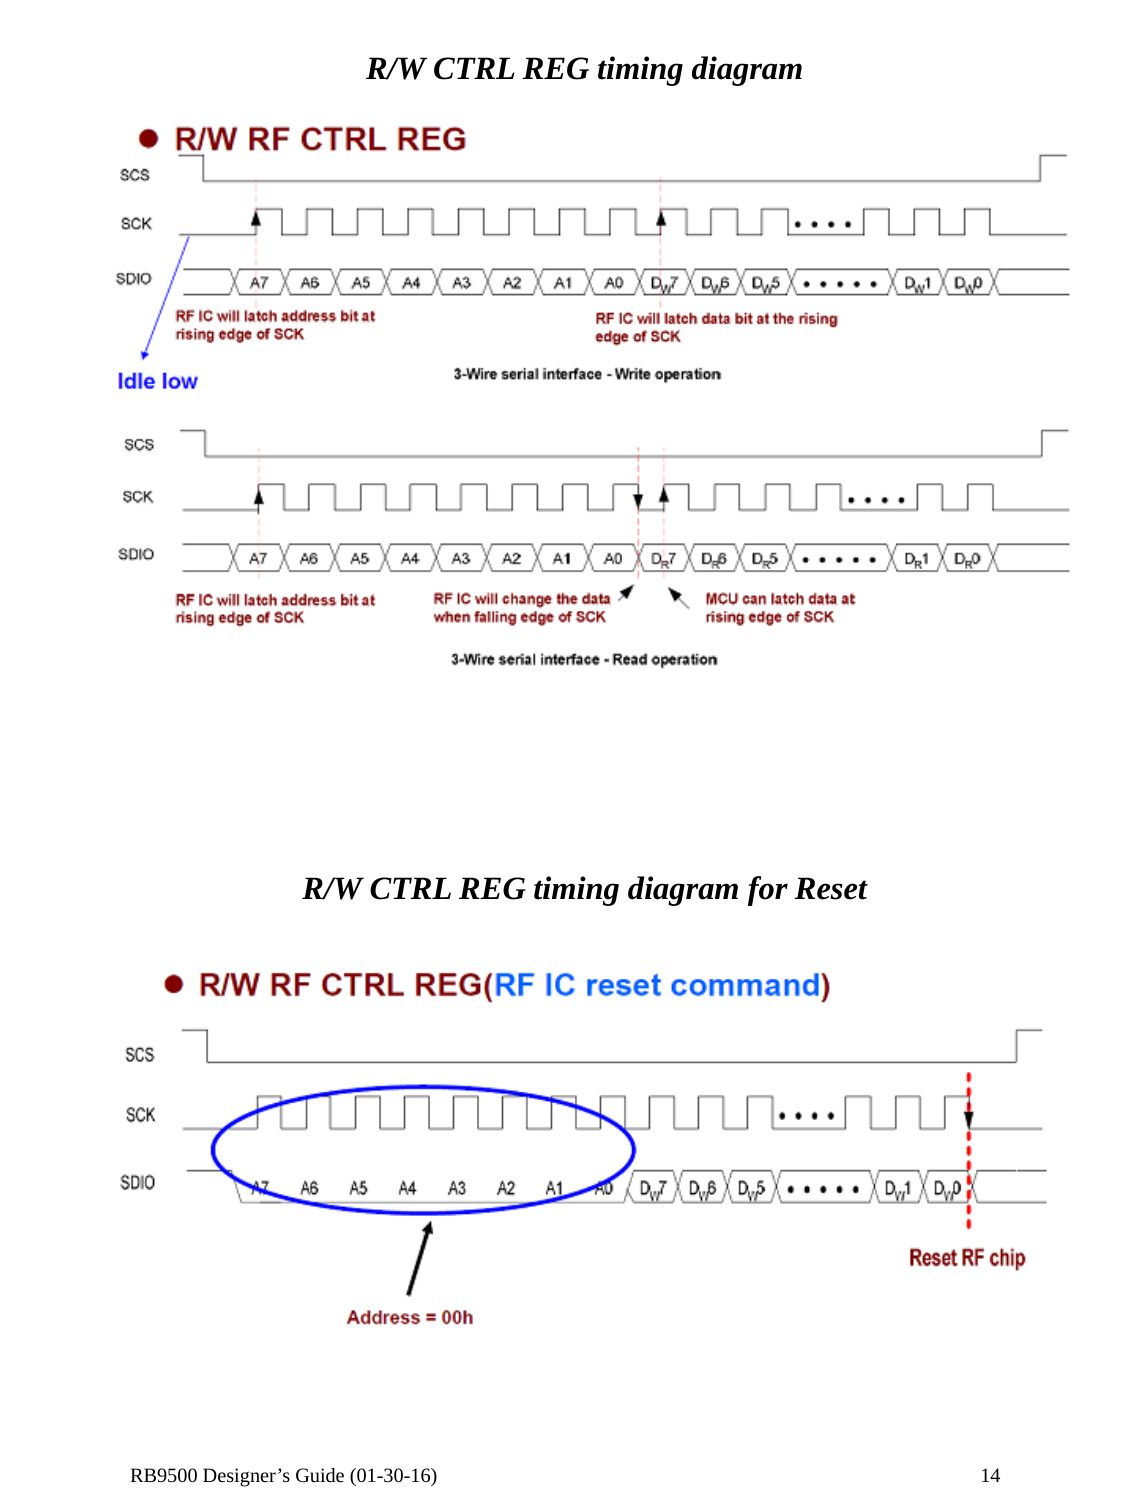  RB9500 Designer’s Guide (01-30-16)               14 R/W CTRL REG timing diagram        R/W CTRL REG timing diagram for Reset      